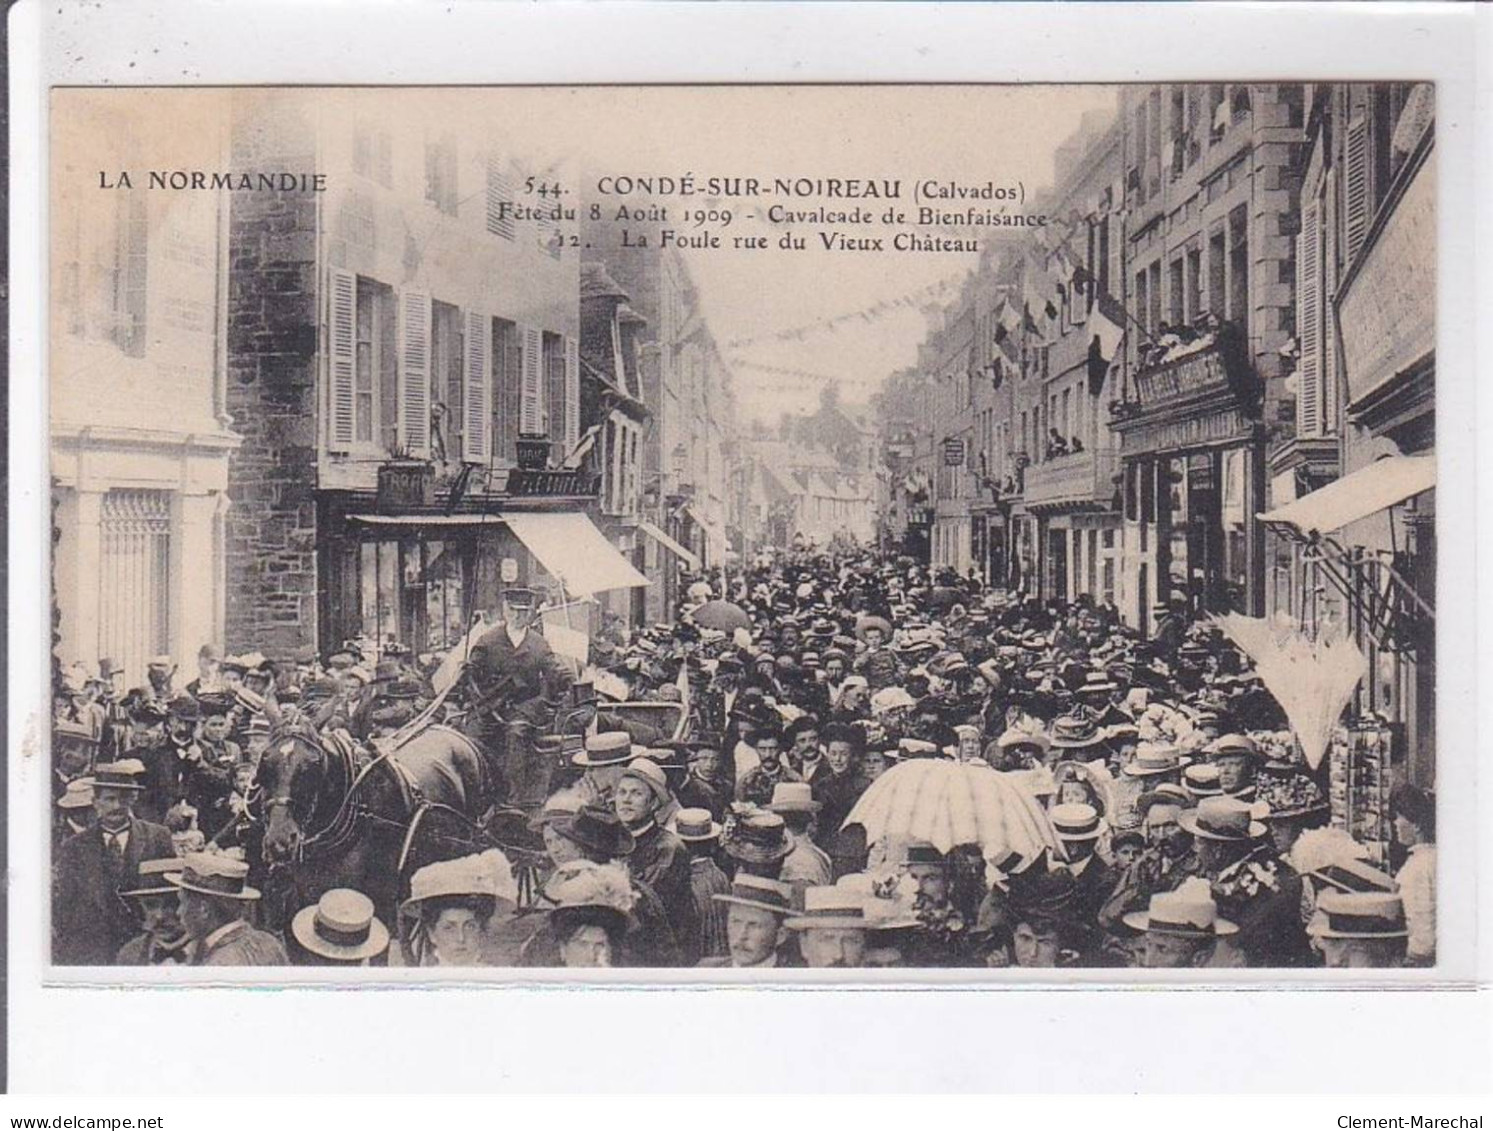 CONDE-sur-NOIREAU: fête du 8 août 1909 cavalcade de bienfaisance le char du laboureur, 12 CPA - très bon état